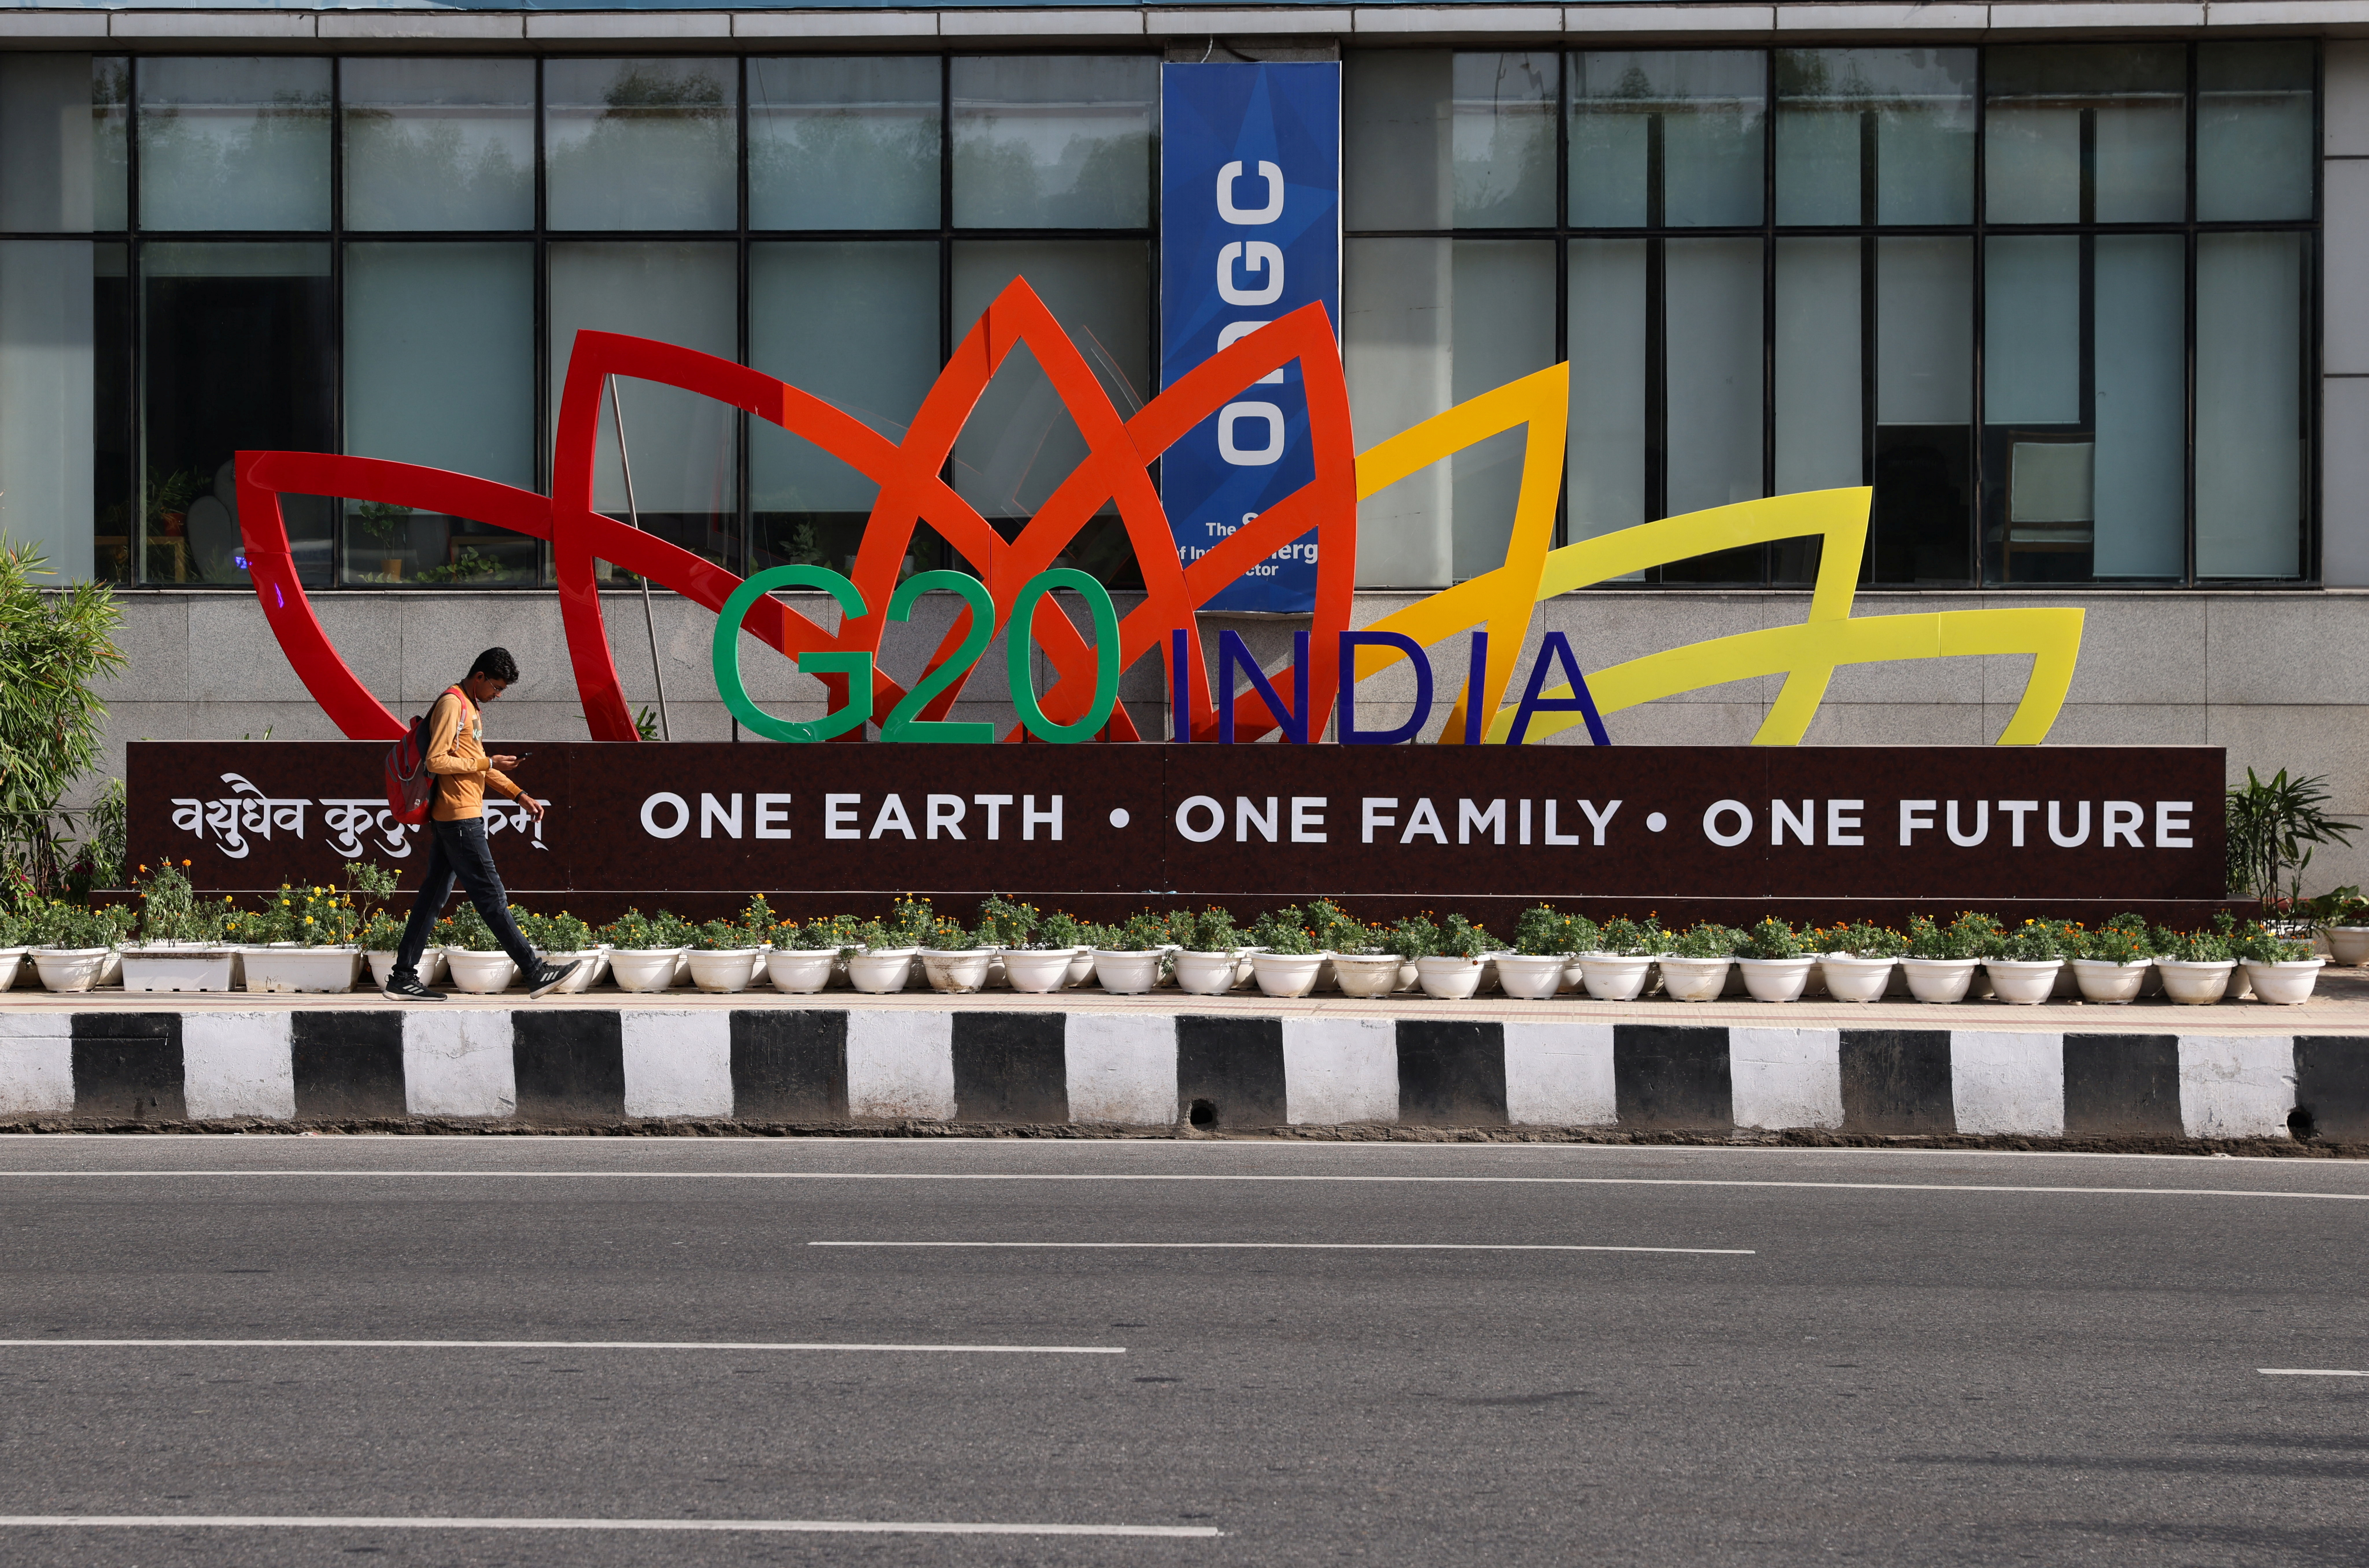 2023 G20 New Delhi summit - Wikipedia